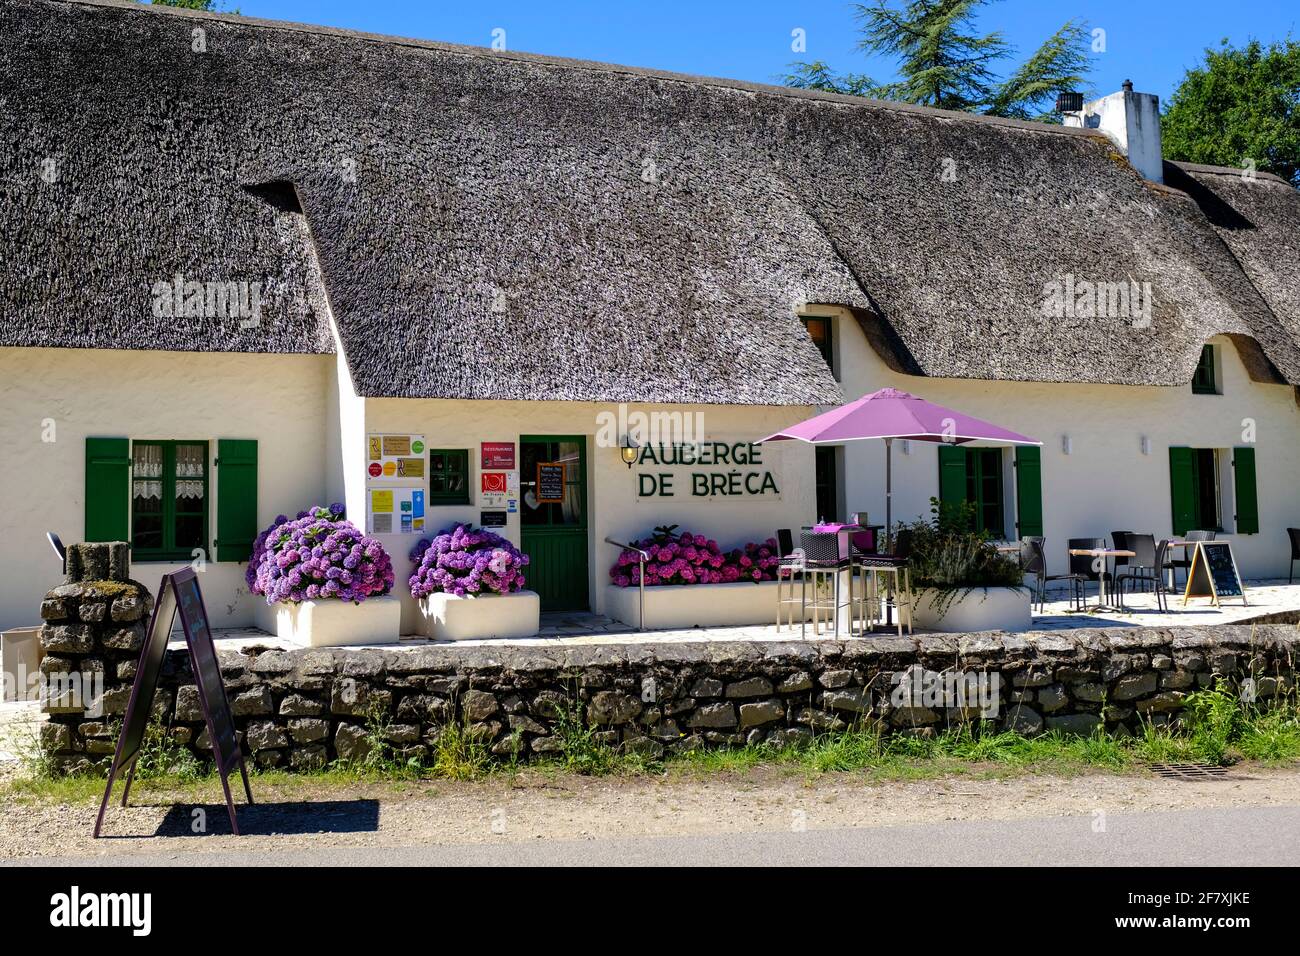 Frankreich, Bréca, 13.07.2020: Das vielfach ausgezeichnete FeinschmkerRestaurant Auberge de Bréca in einem alten, traditionellens, reetgedeckten bre Foto Stock